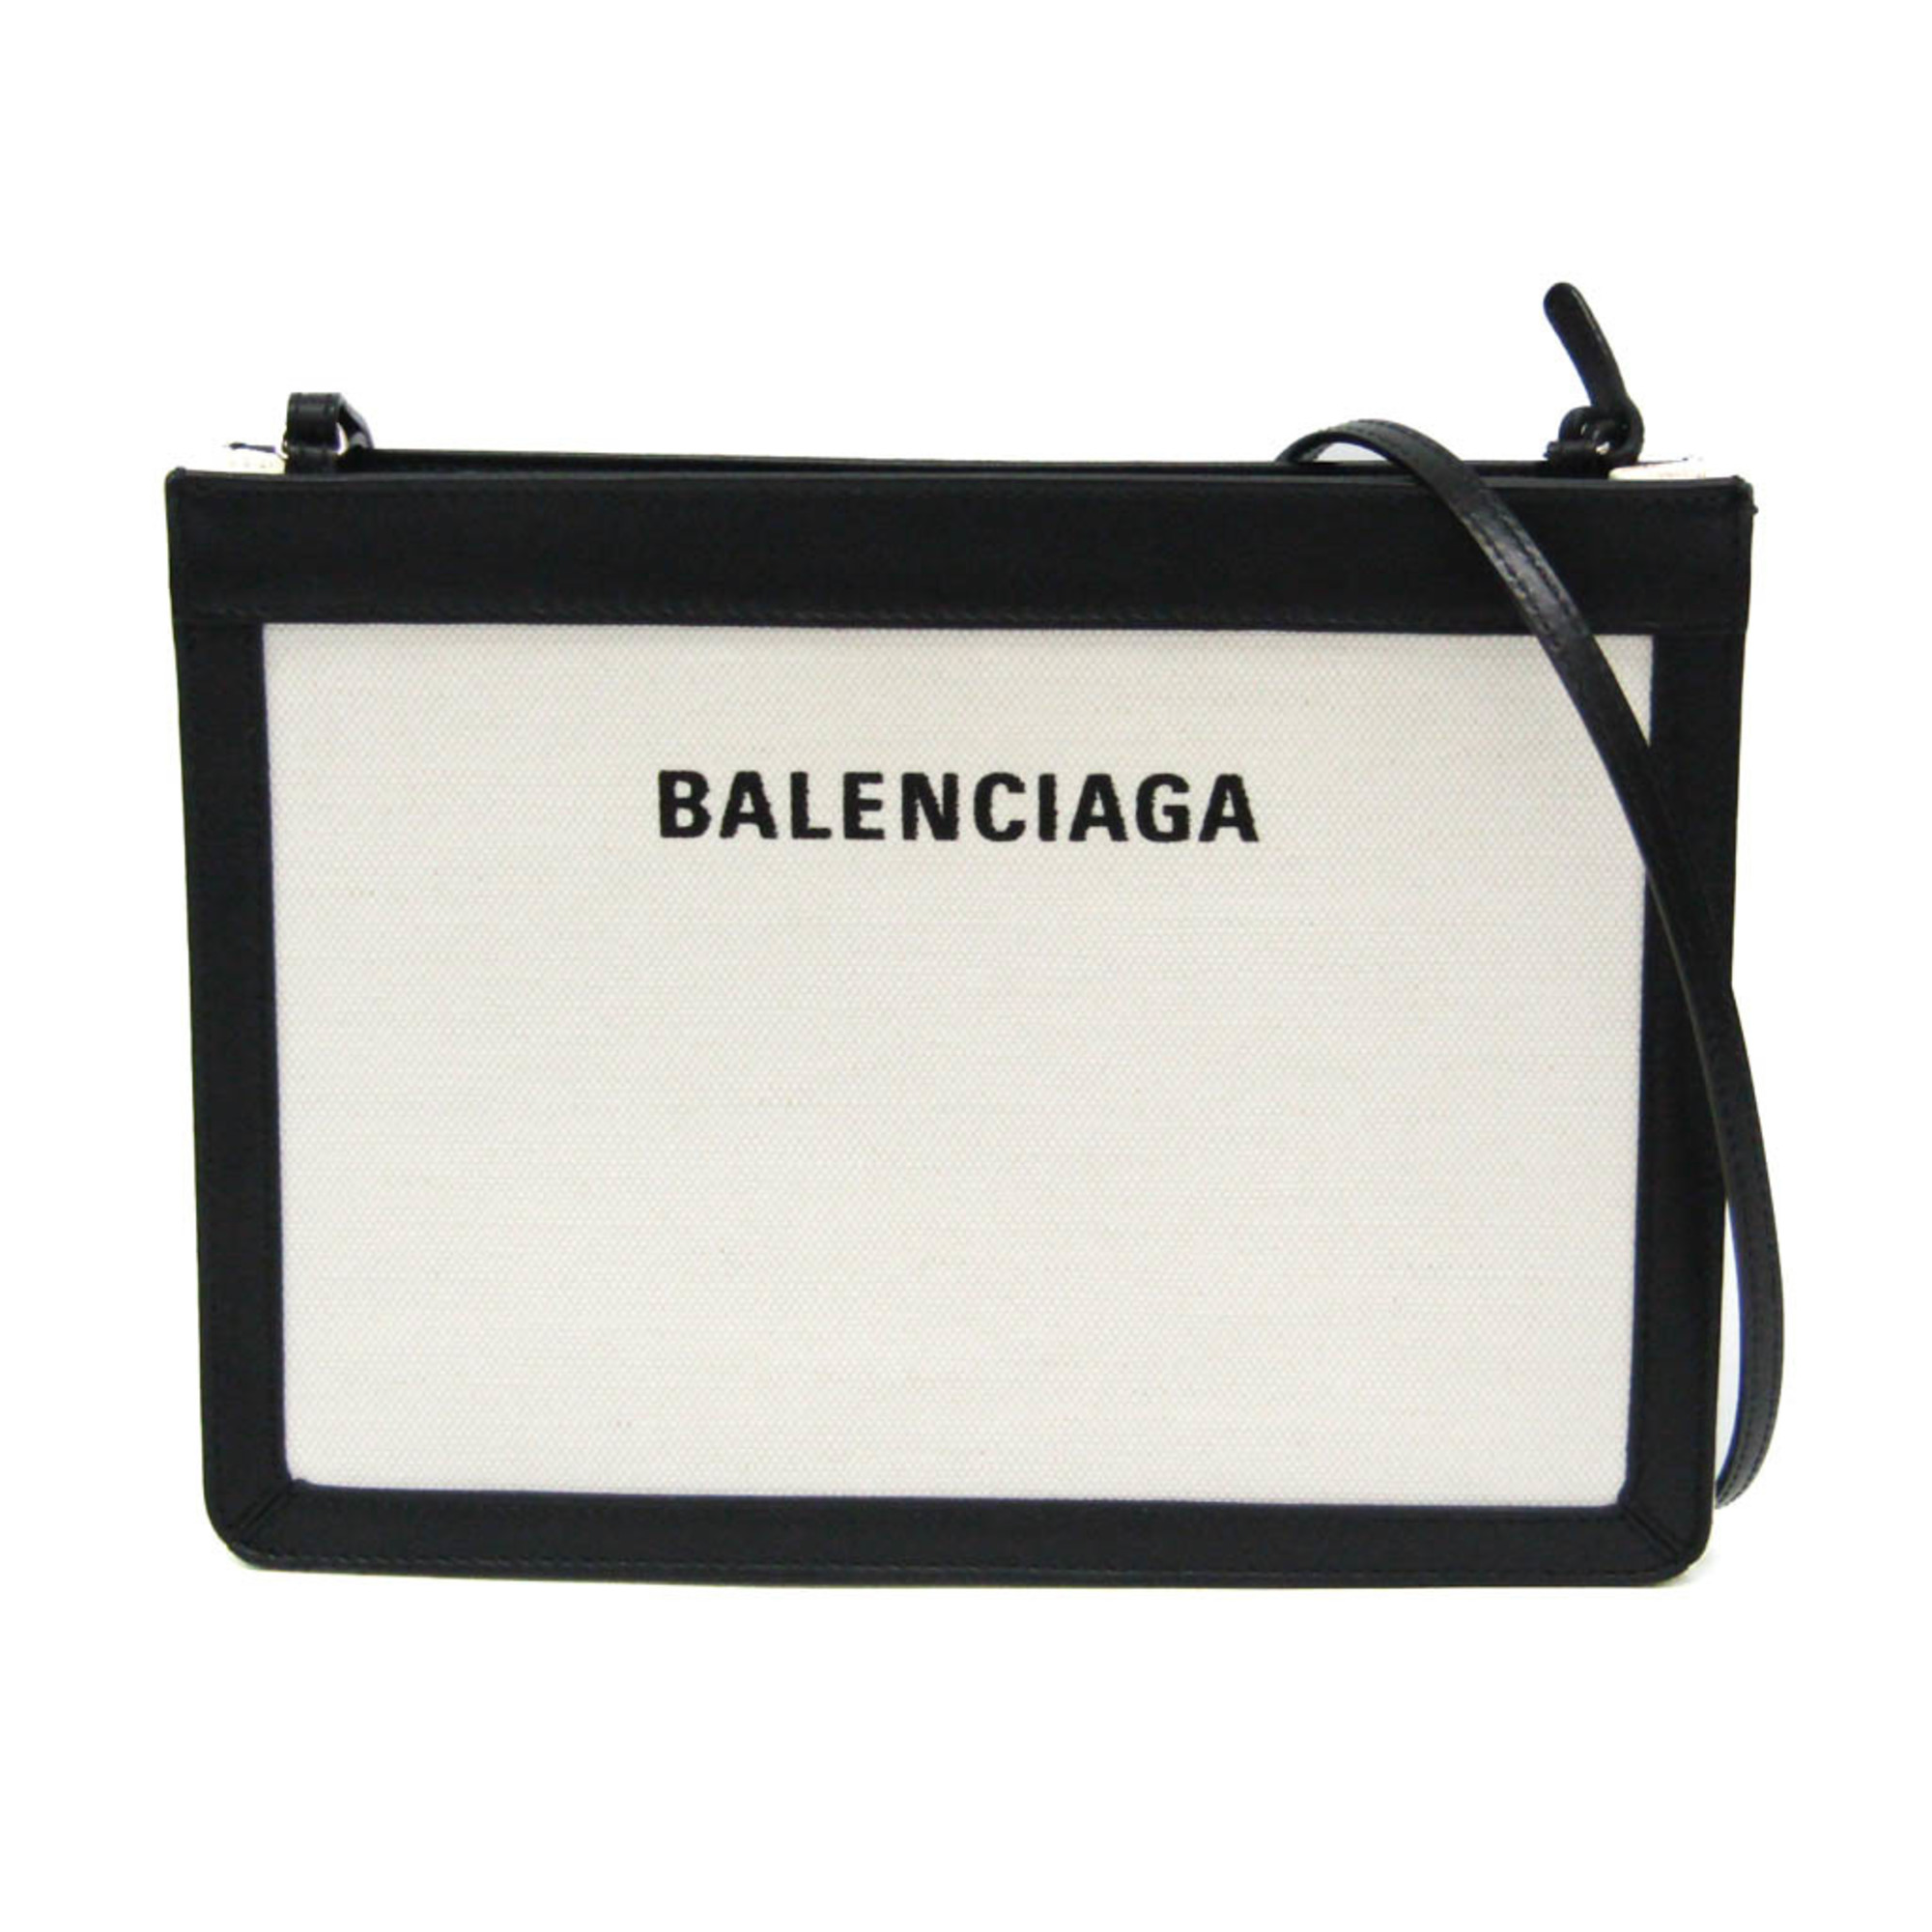 バレンシアガ(Balenciaga) ネイビー・ポシェット 339937 メンズ ...